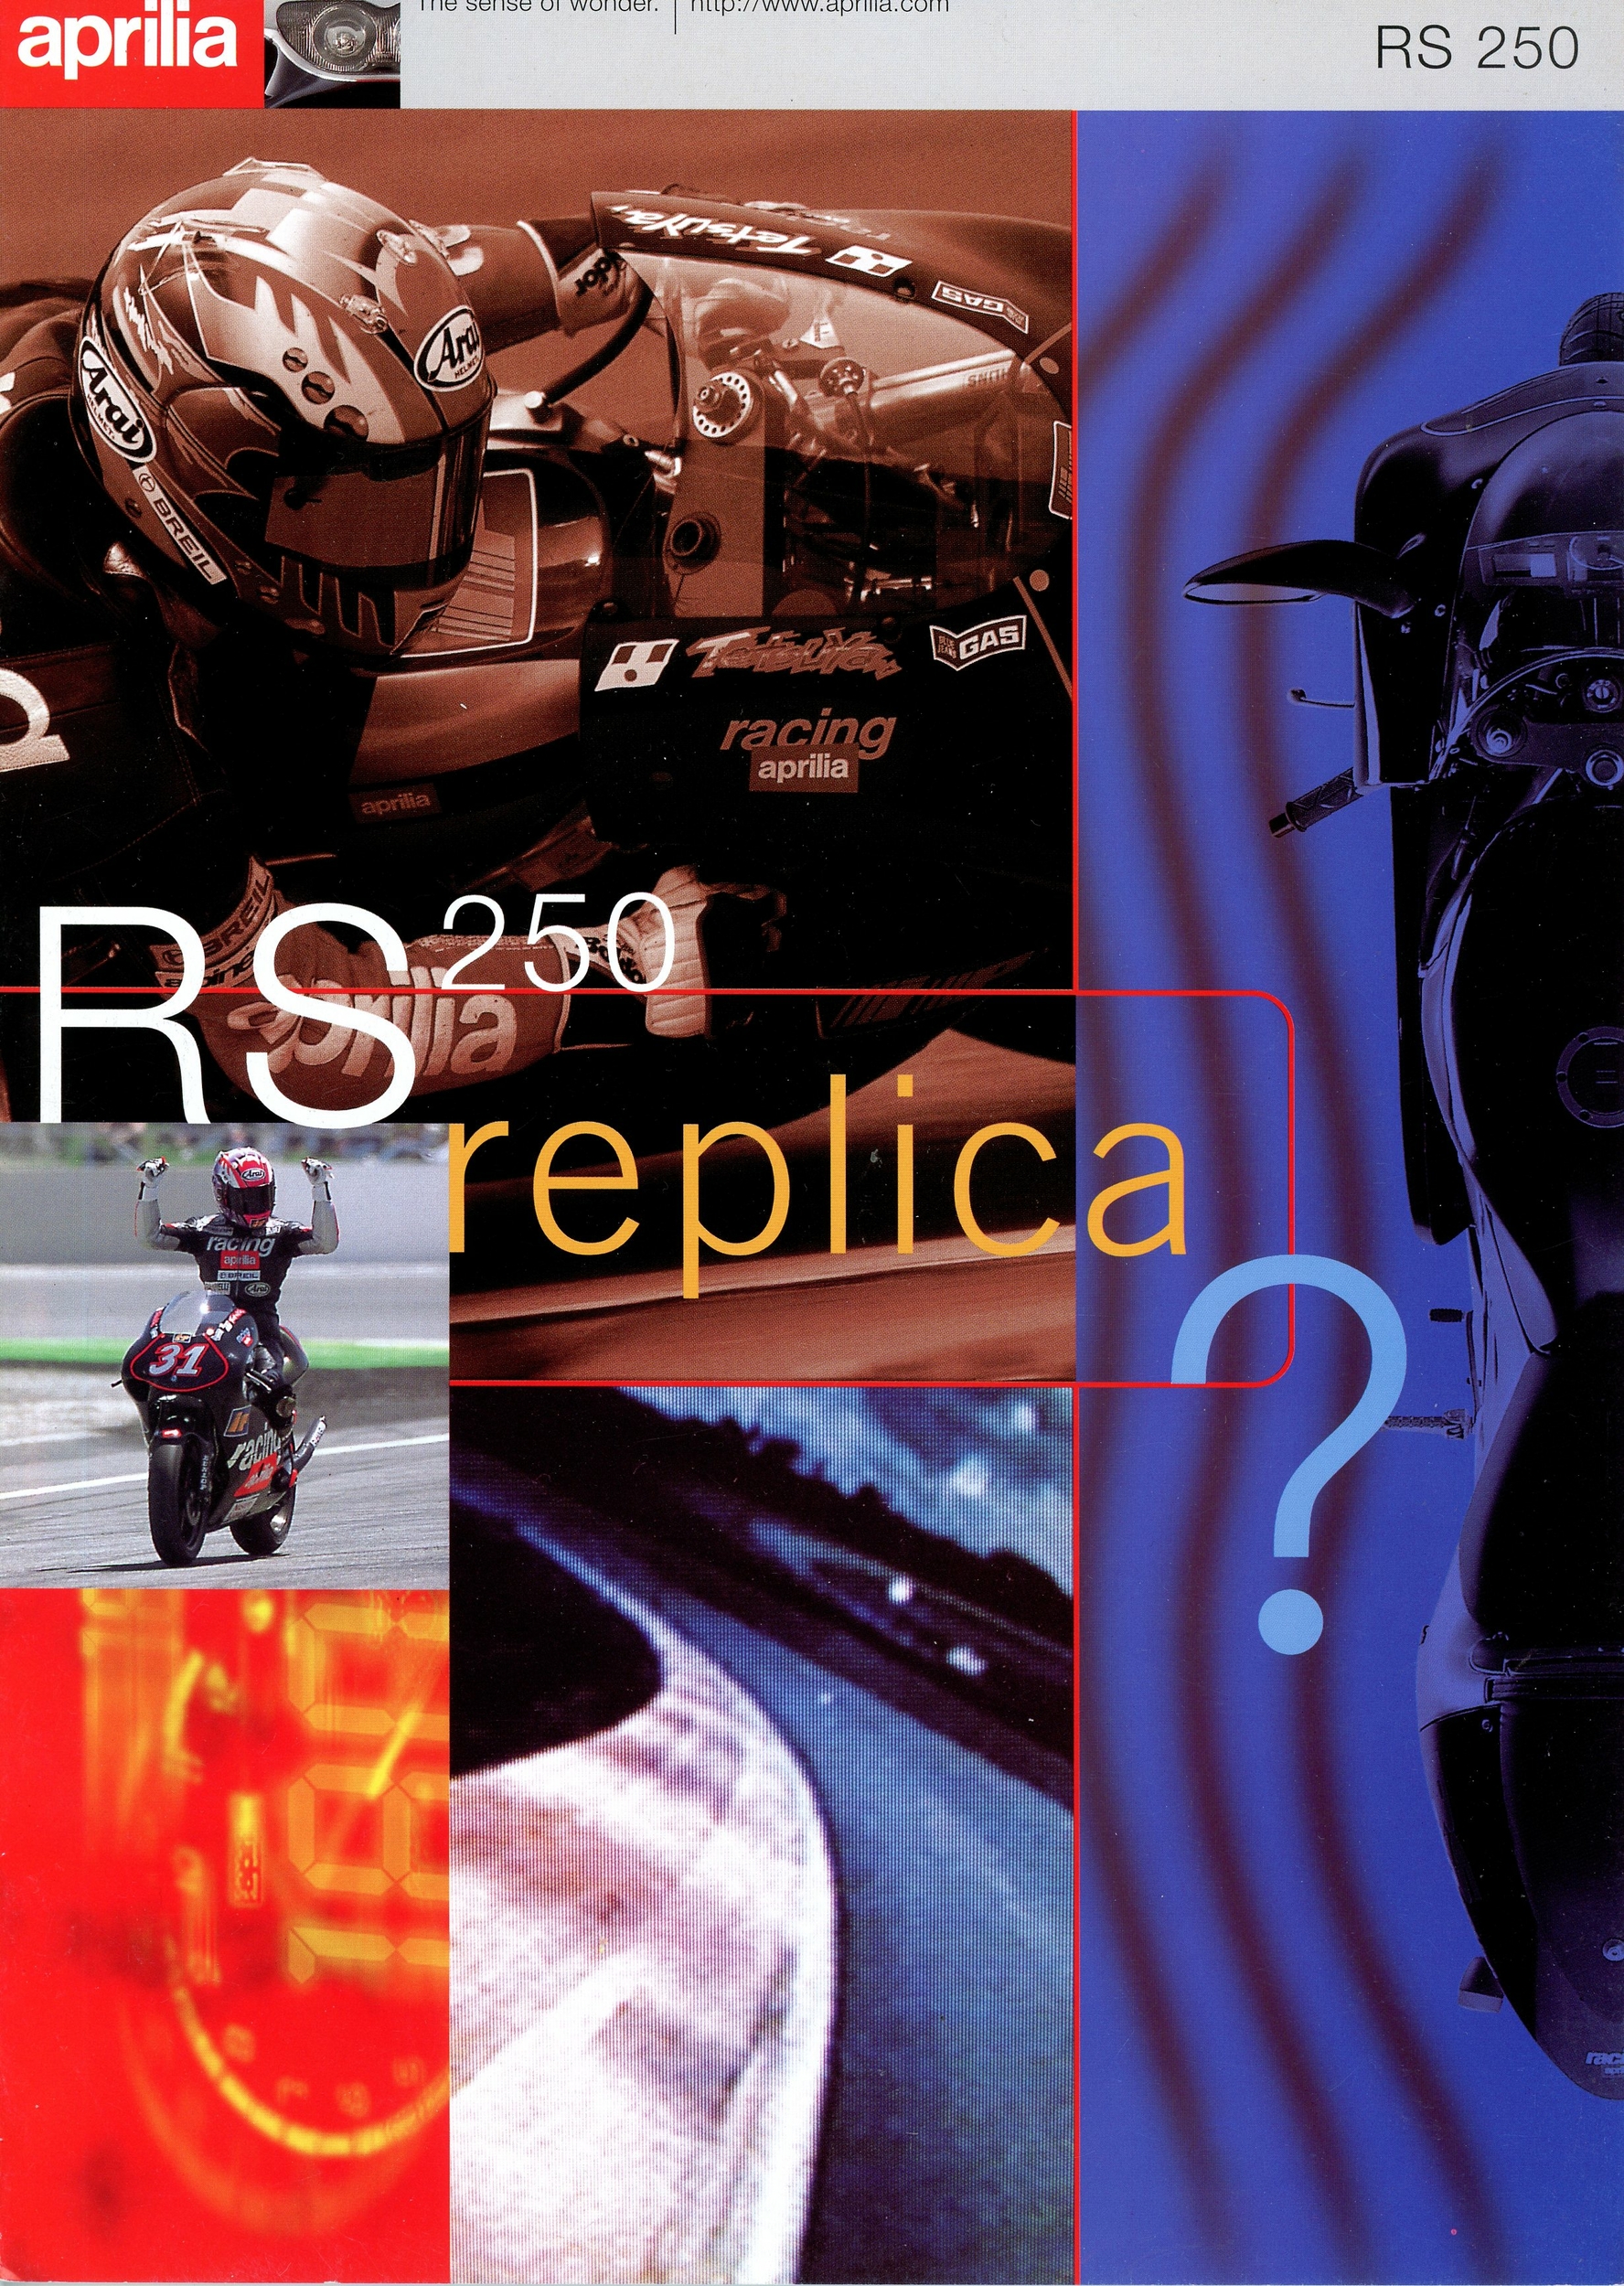 BROCHURE-APRILIA-RS-250-REPLICA-RS250-LEMASTERBROCKERS-CATALOGUE-MOTO-1997